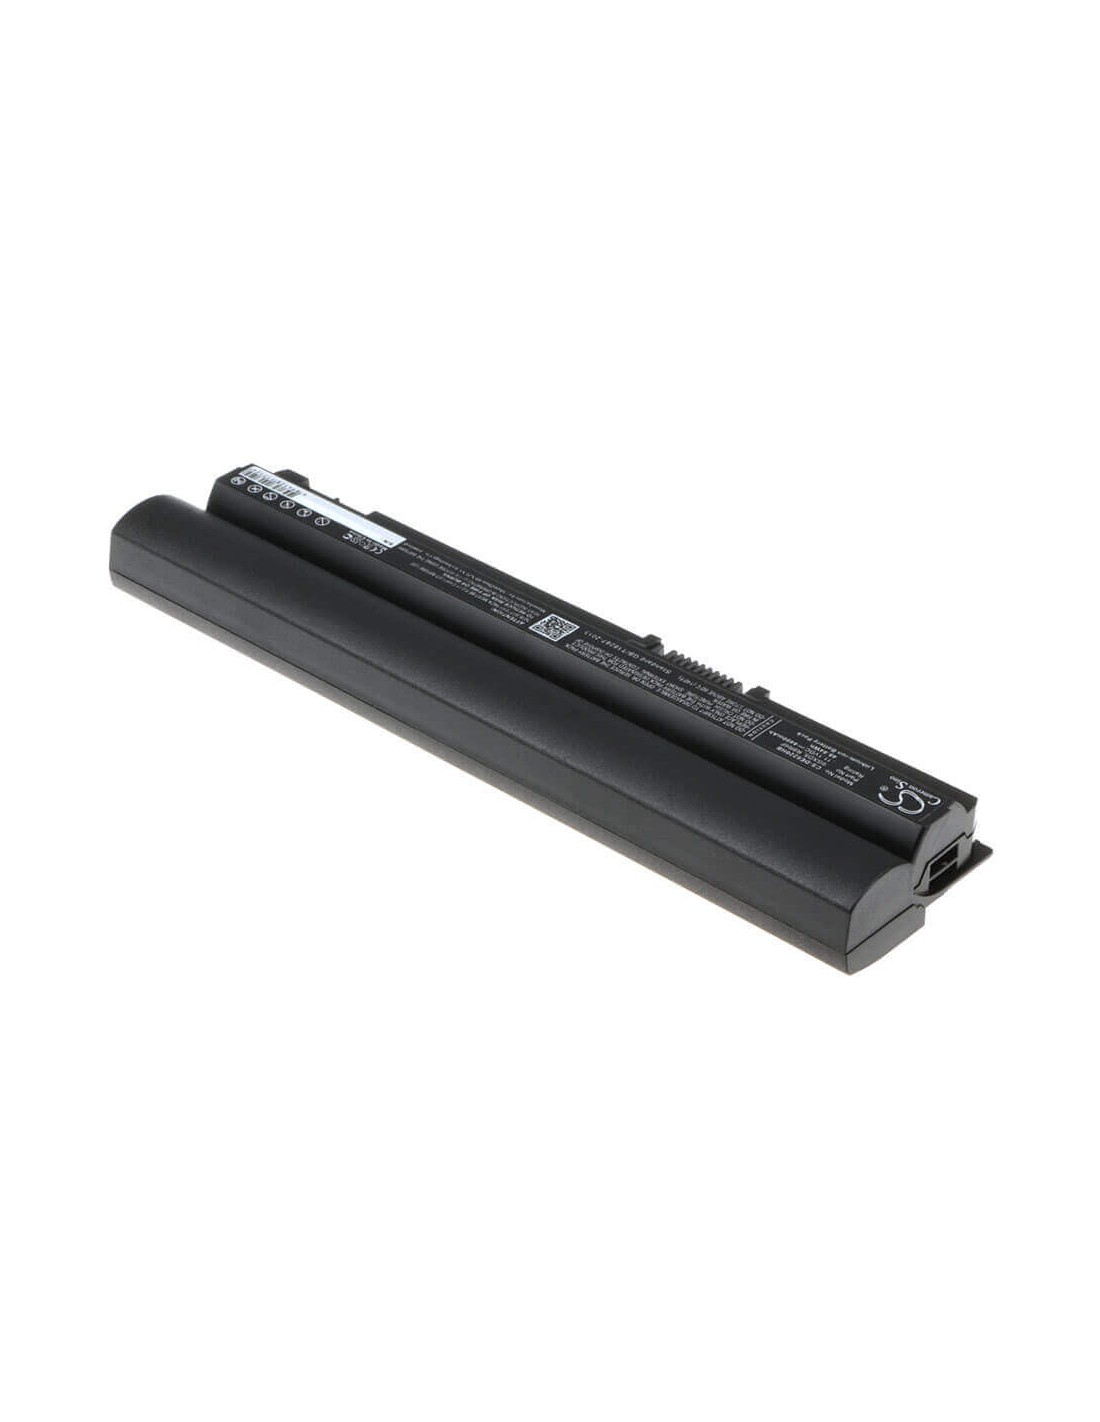 Black Battery for Dell Latitude E6120, Latitude E6220, Latitude E6230 11.1V, 4400mAh - 48.84Wh